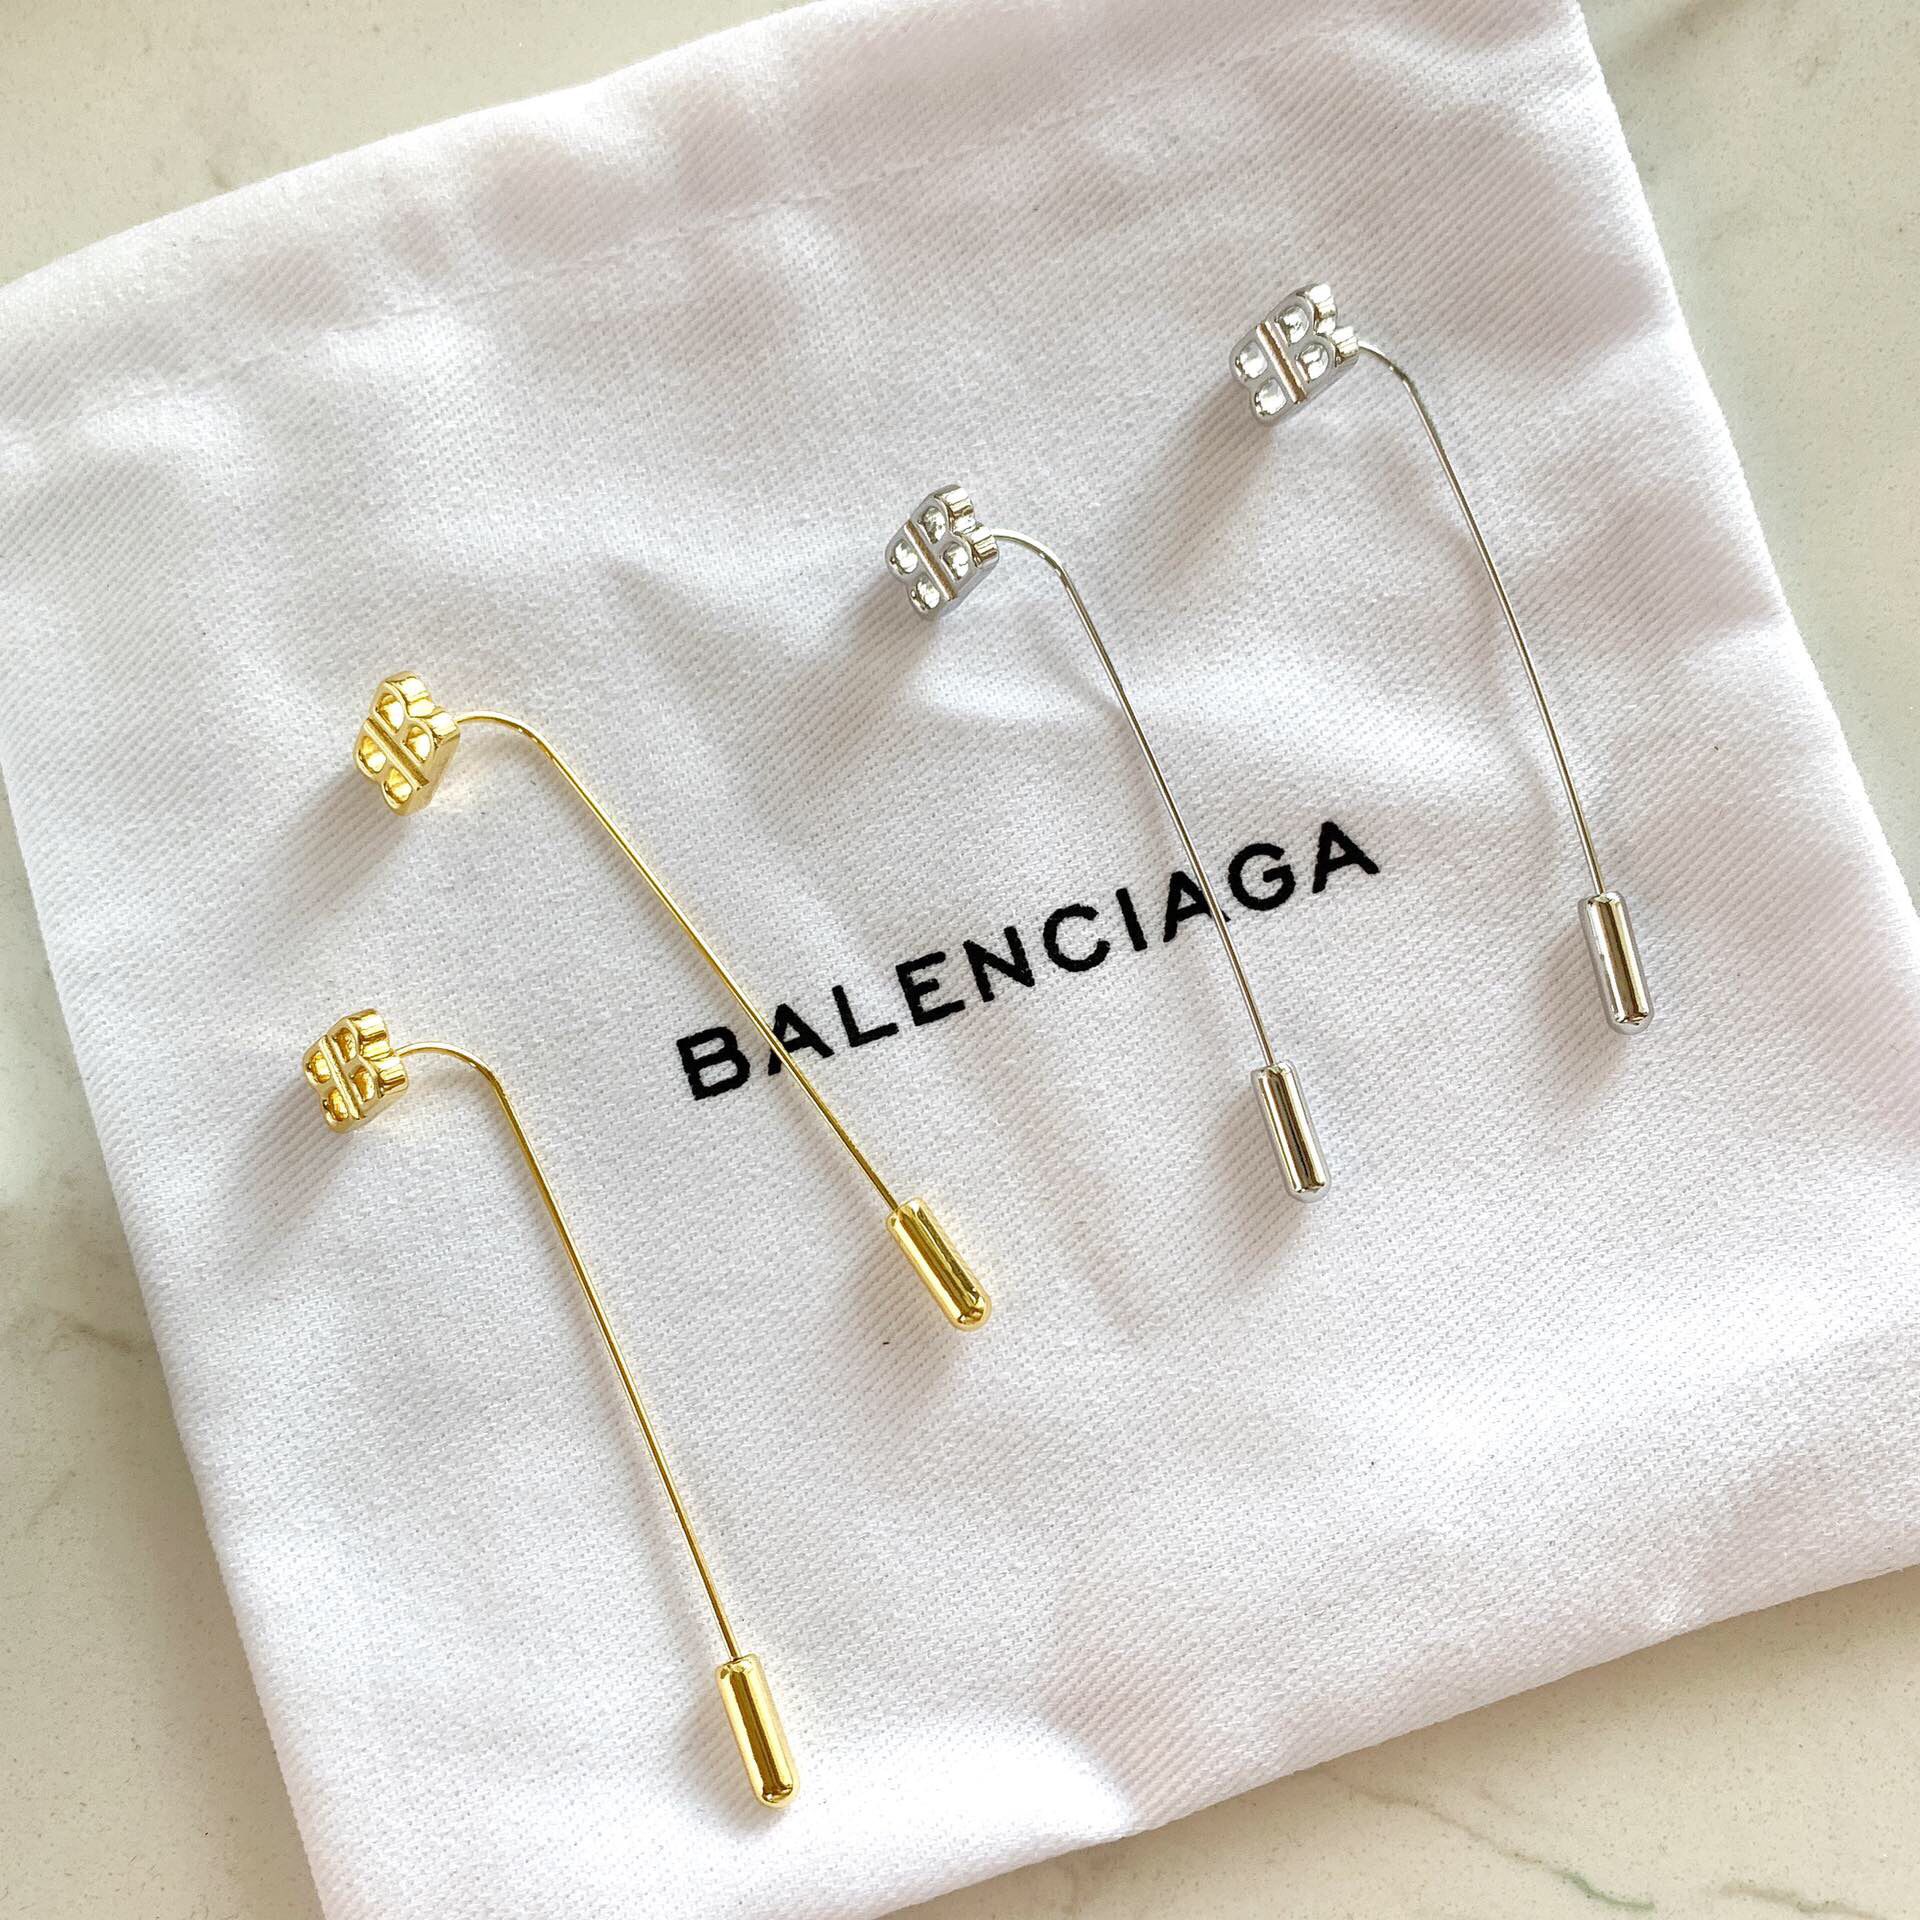 新品 巴黎世家 Balenciaga长款双B字母 耳钉耳环